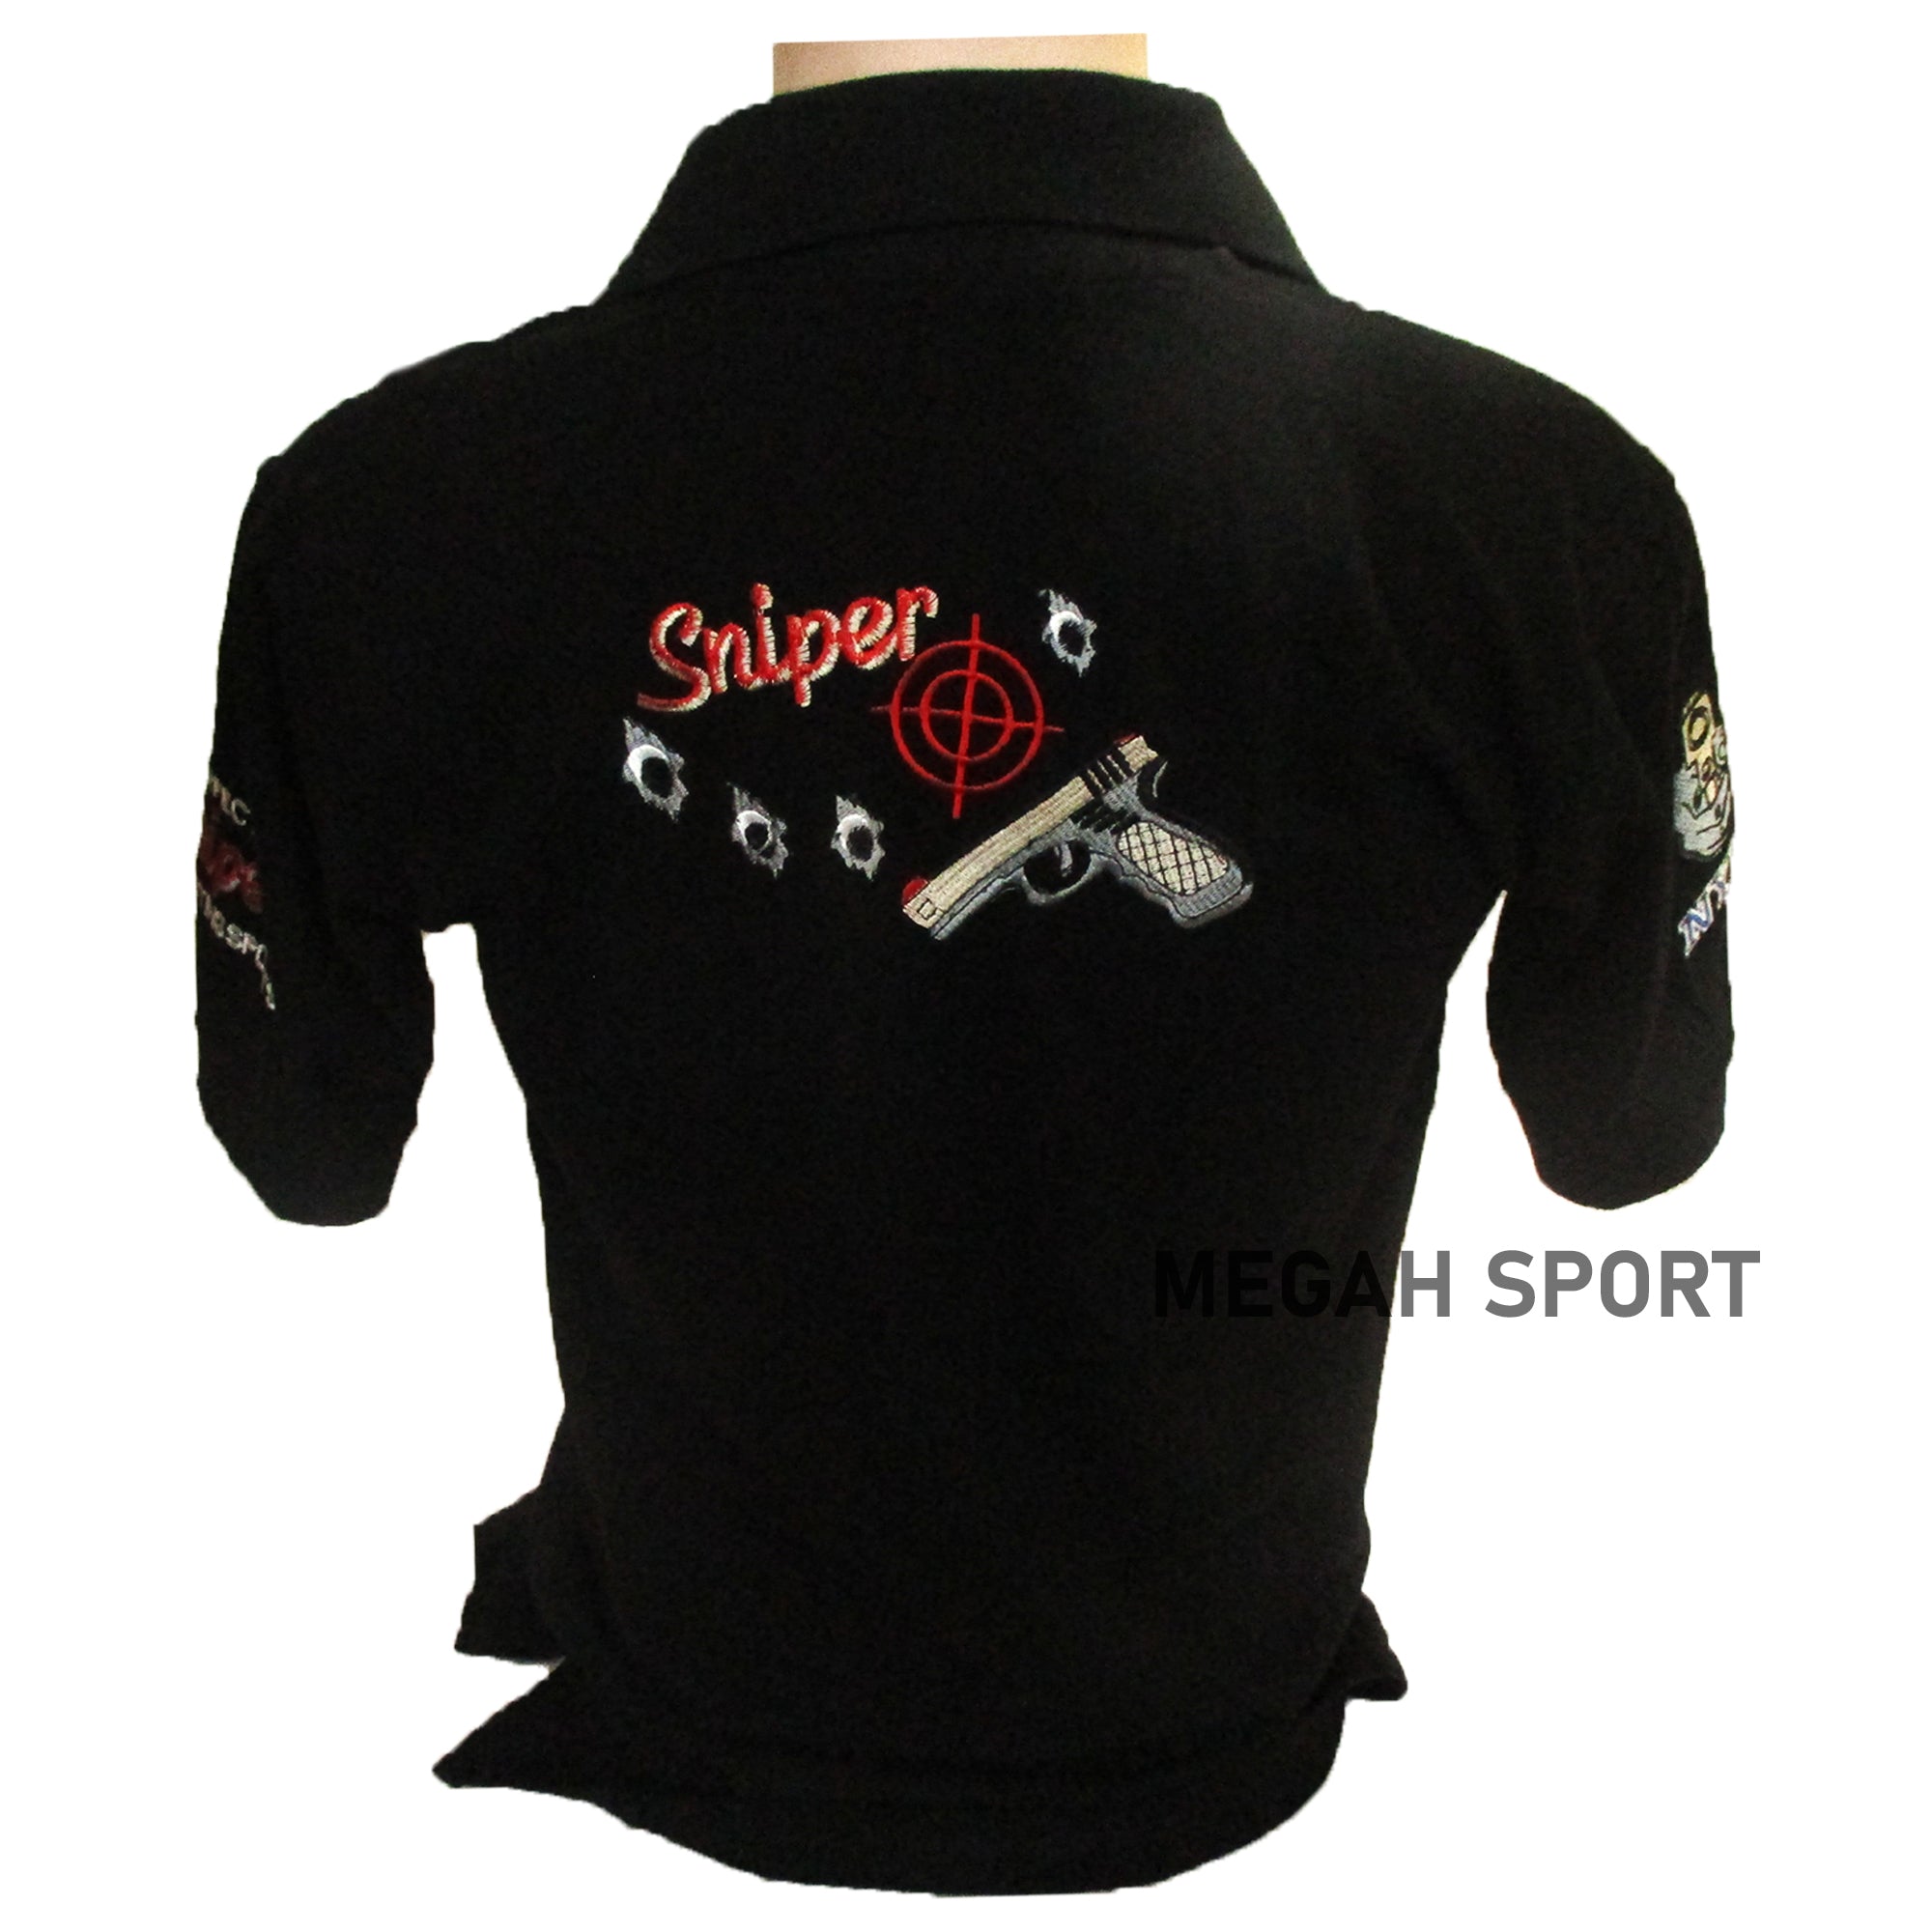 KAOS KERAH BORDIL TACTICAL (KS130) - Megah Sport